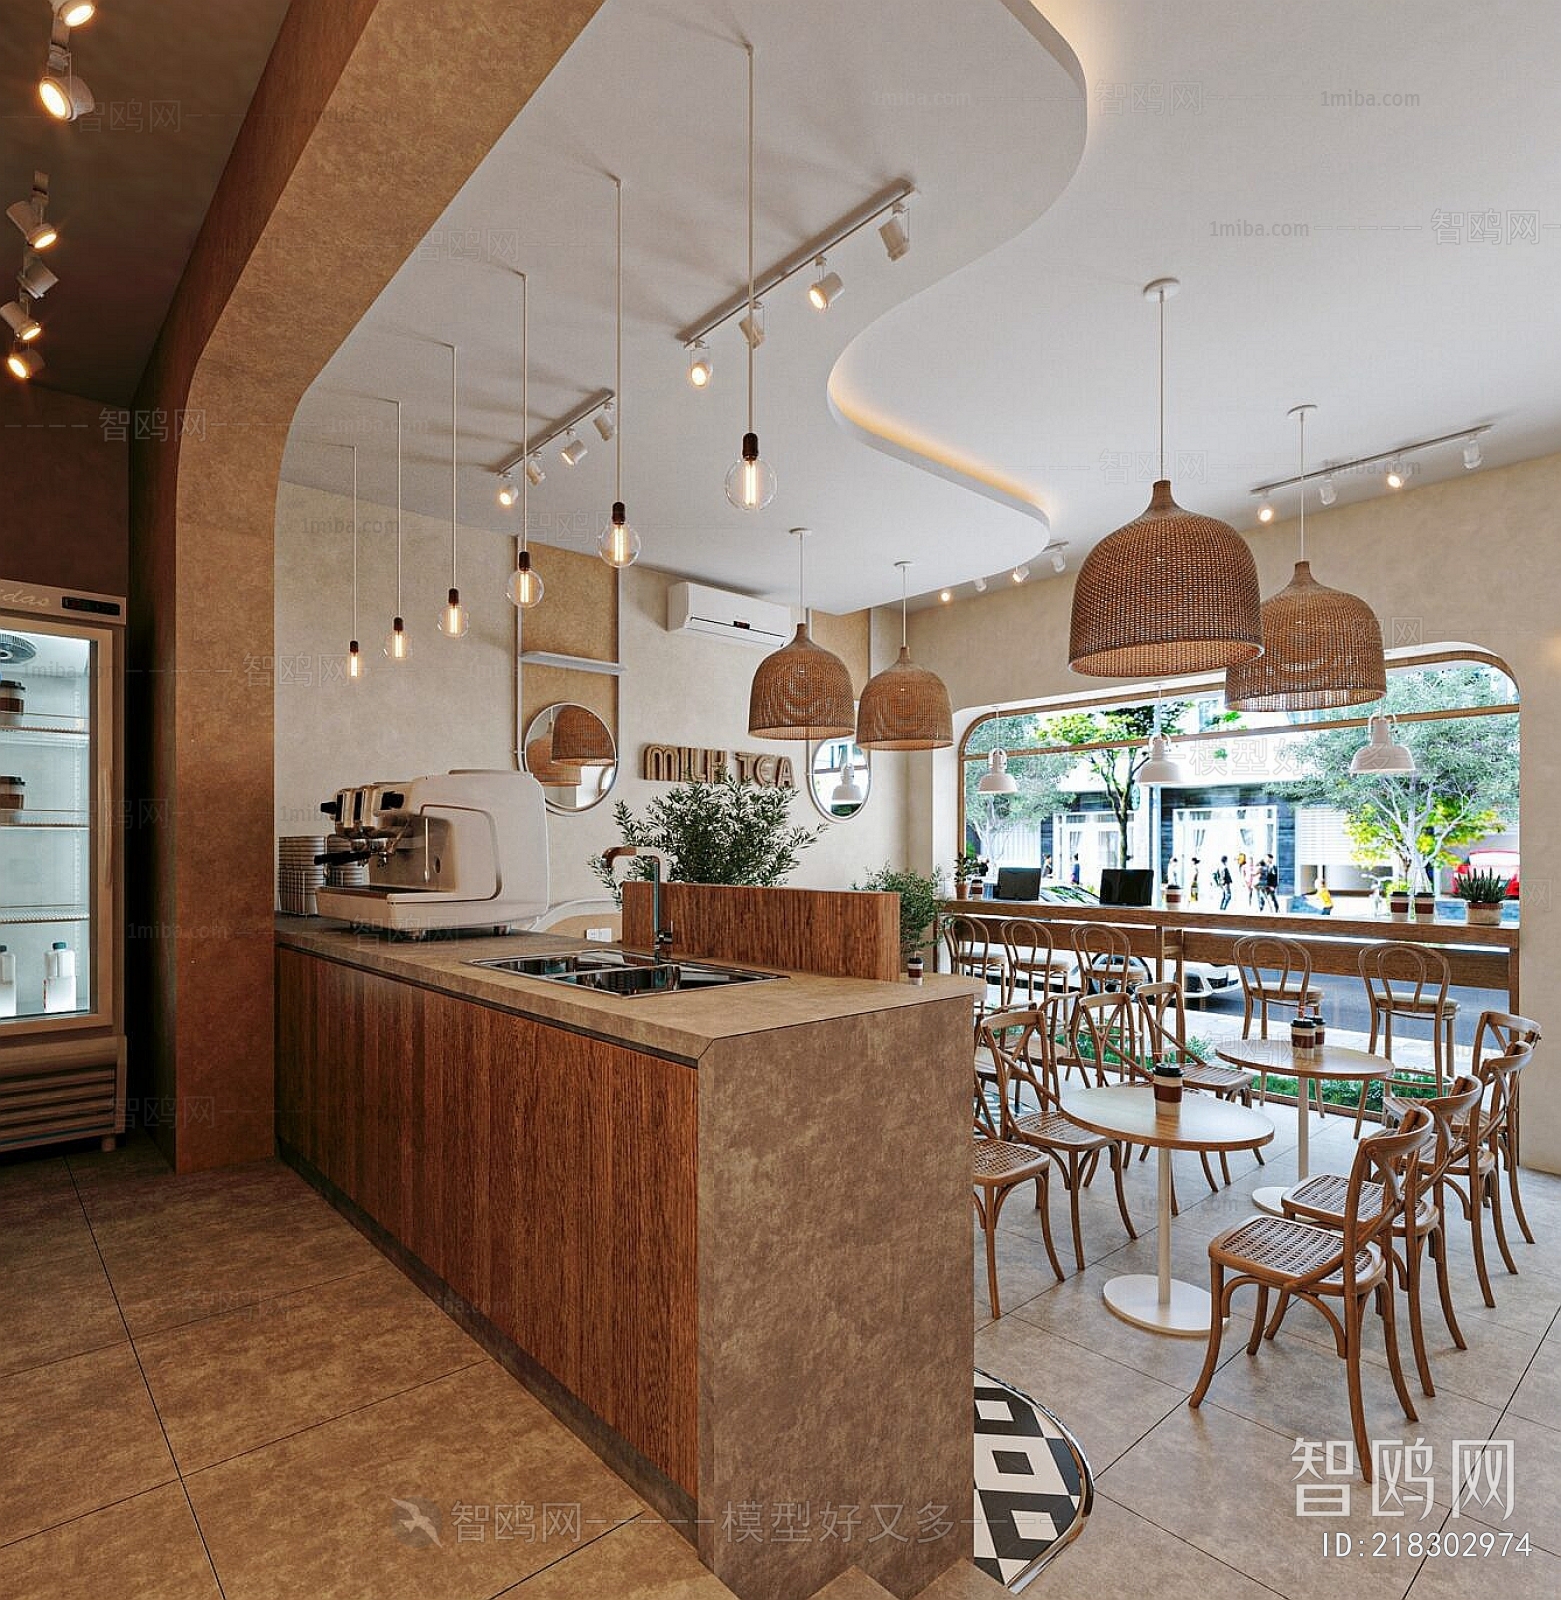 Wabi-sabi Style Cafe